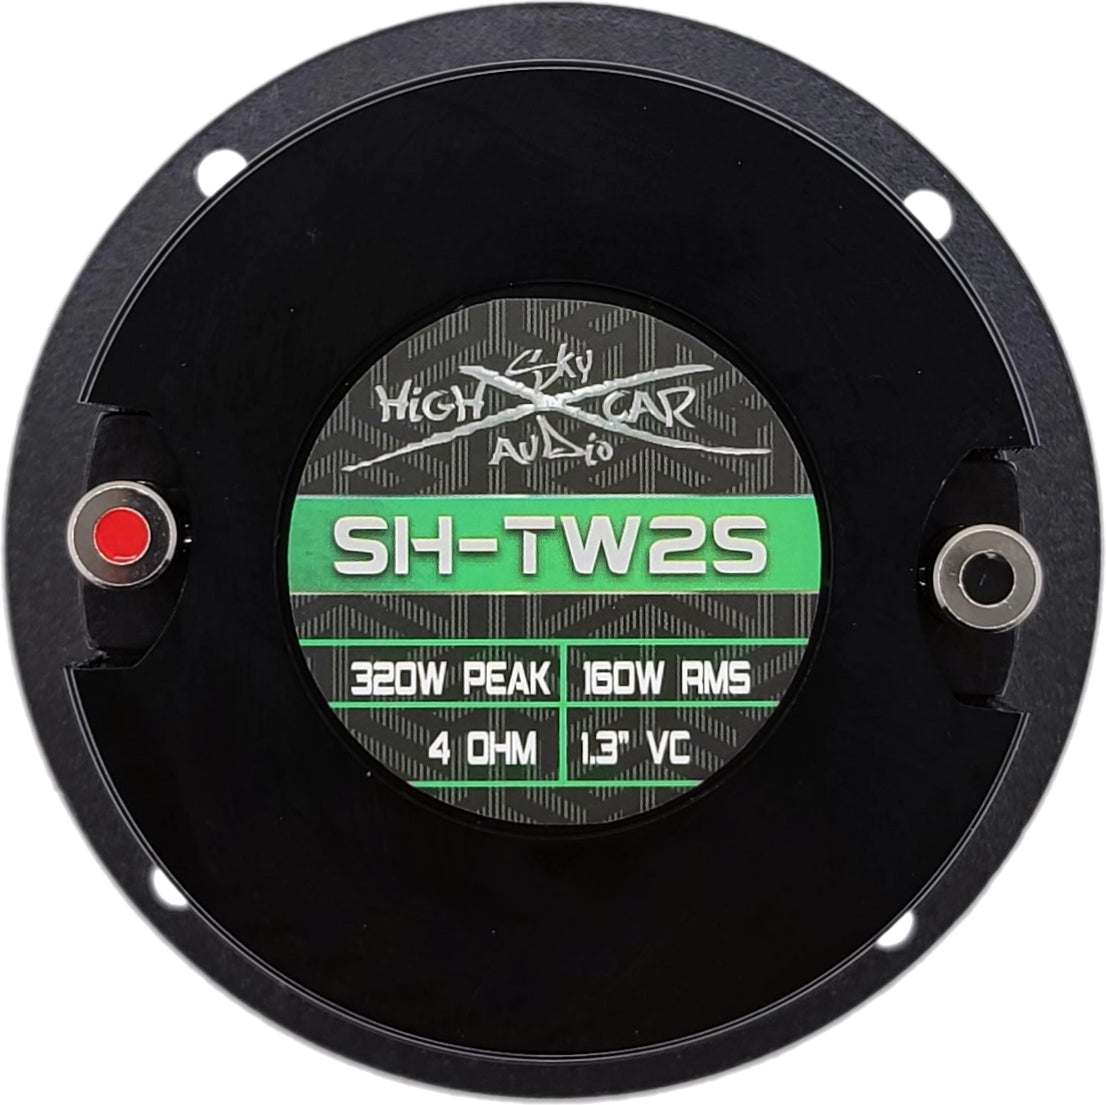 SHCA SH-TW2S Neo 1.3" VC Bullet Tweeter 4 ohm (Single Speaker)